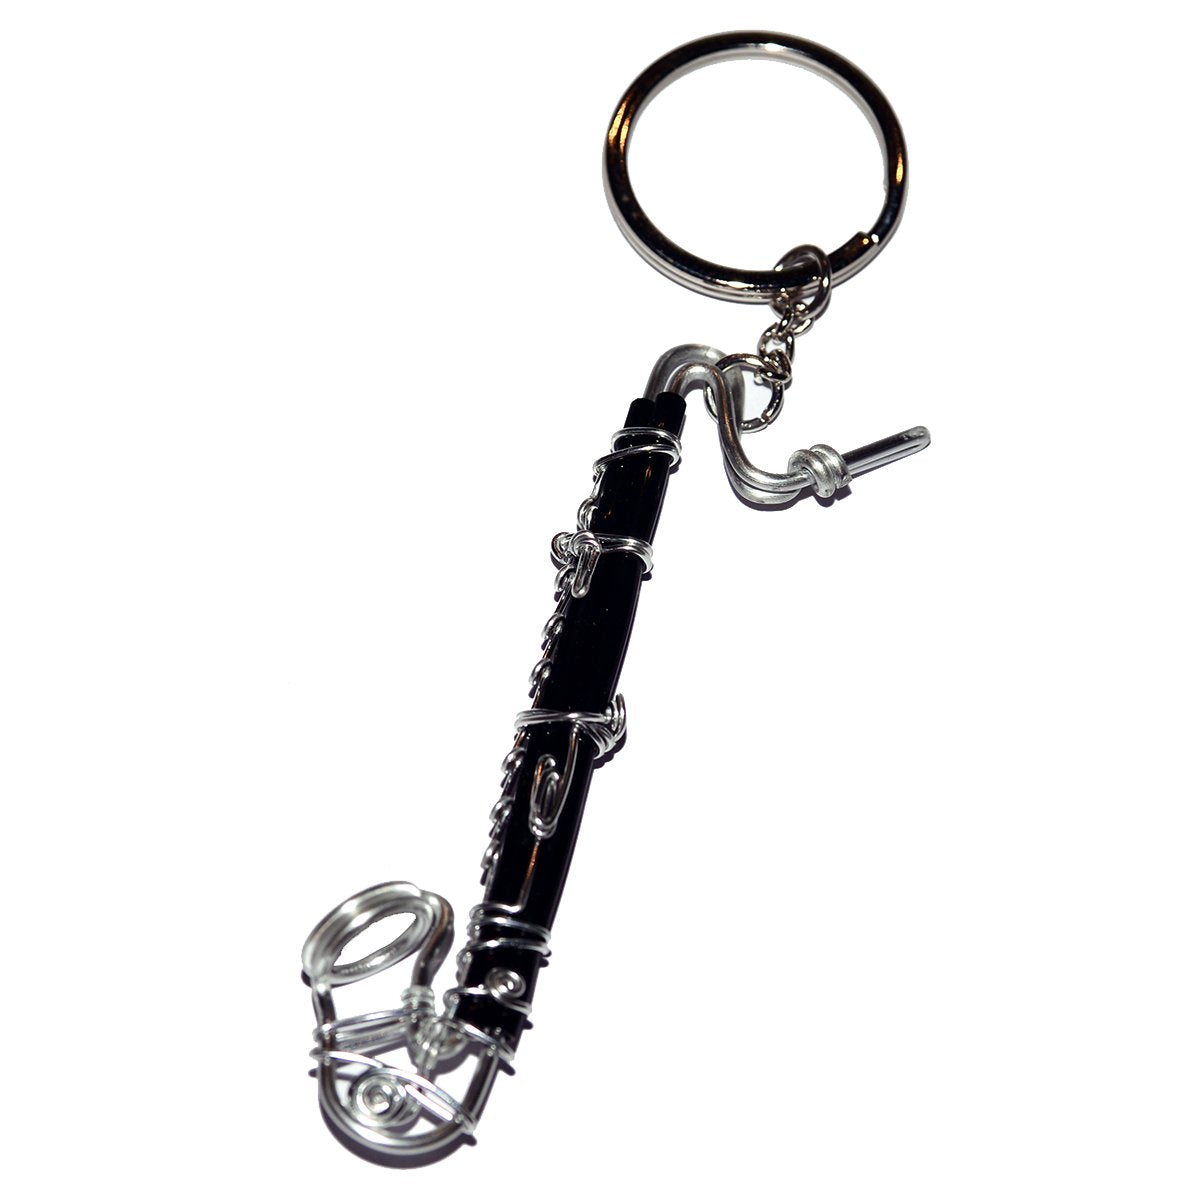 Wire Art Walker - Bass Clarinet Keychain-Accessories-Wire Art Walker-Music Elements